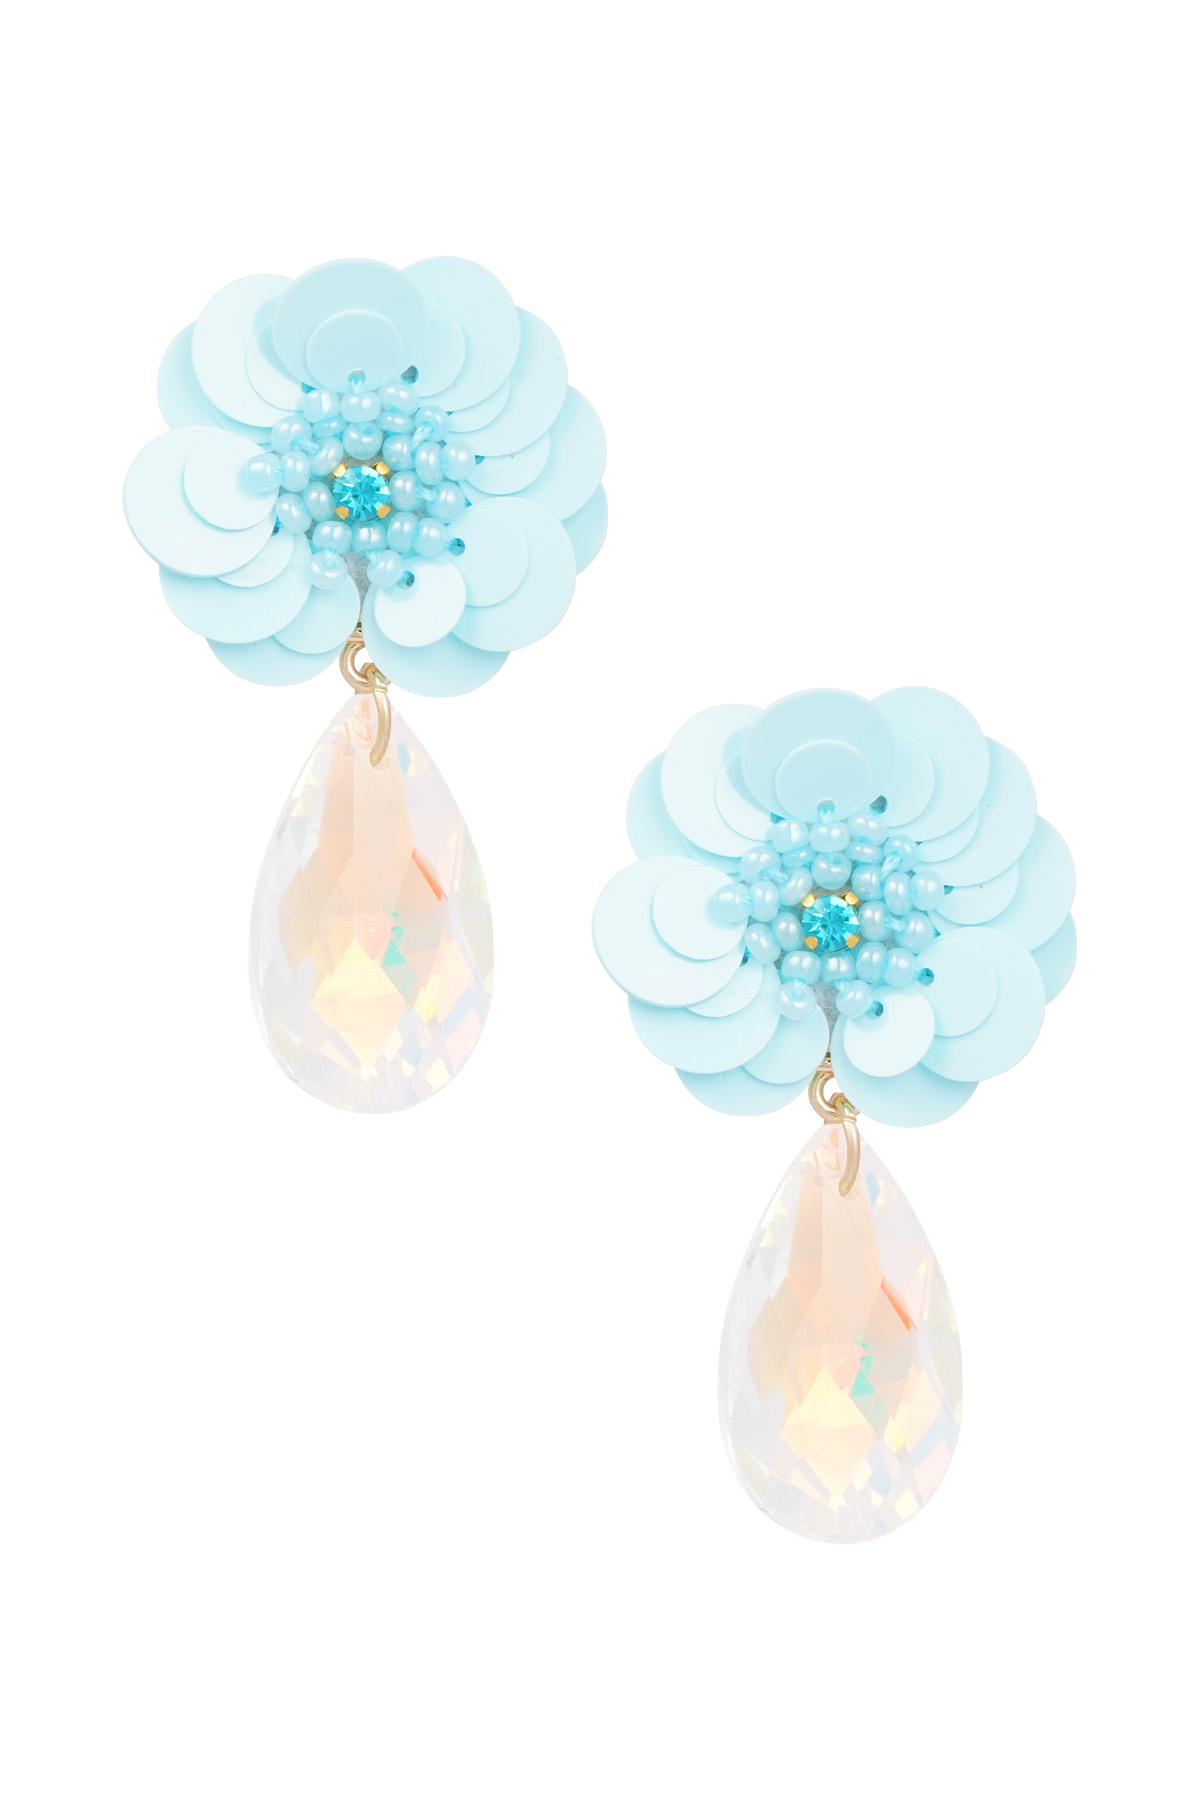 Flower earrings with drop Earrings h5 